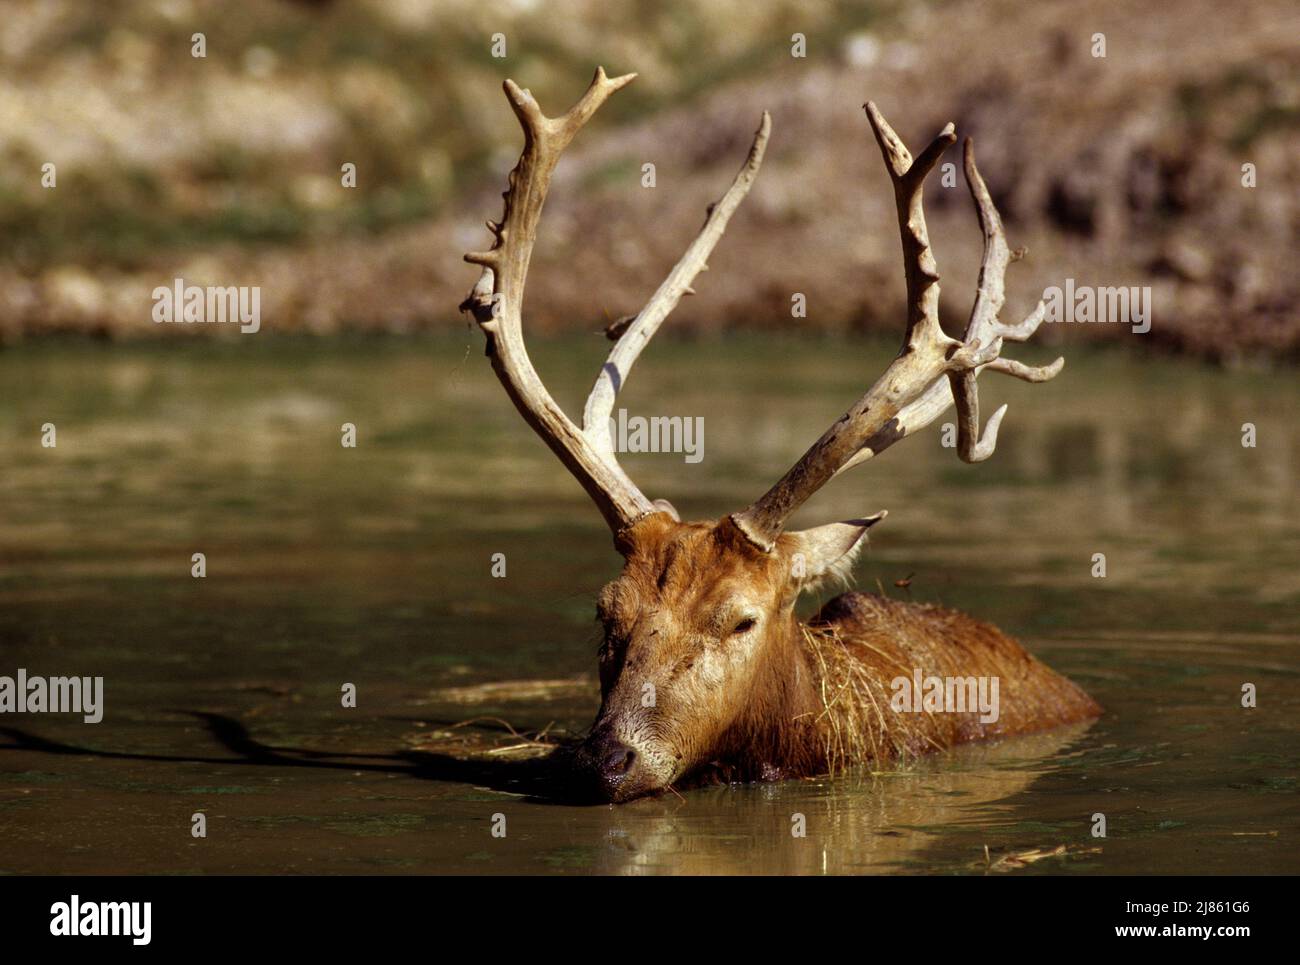 El ciervo de Pere David descansando en el agua Foto de stock